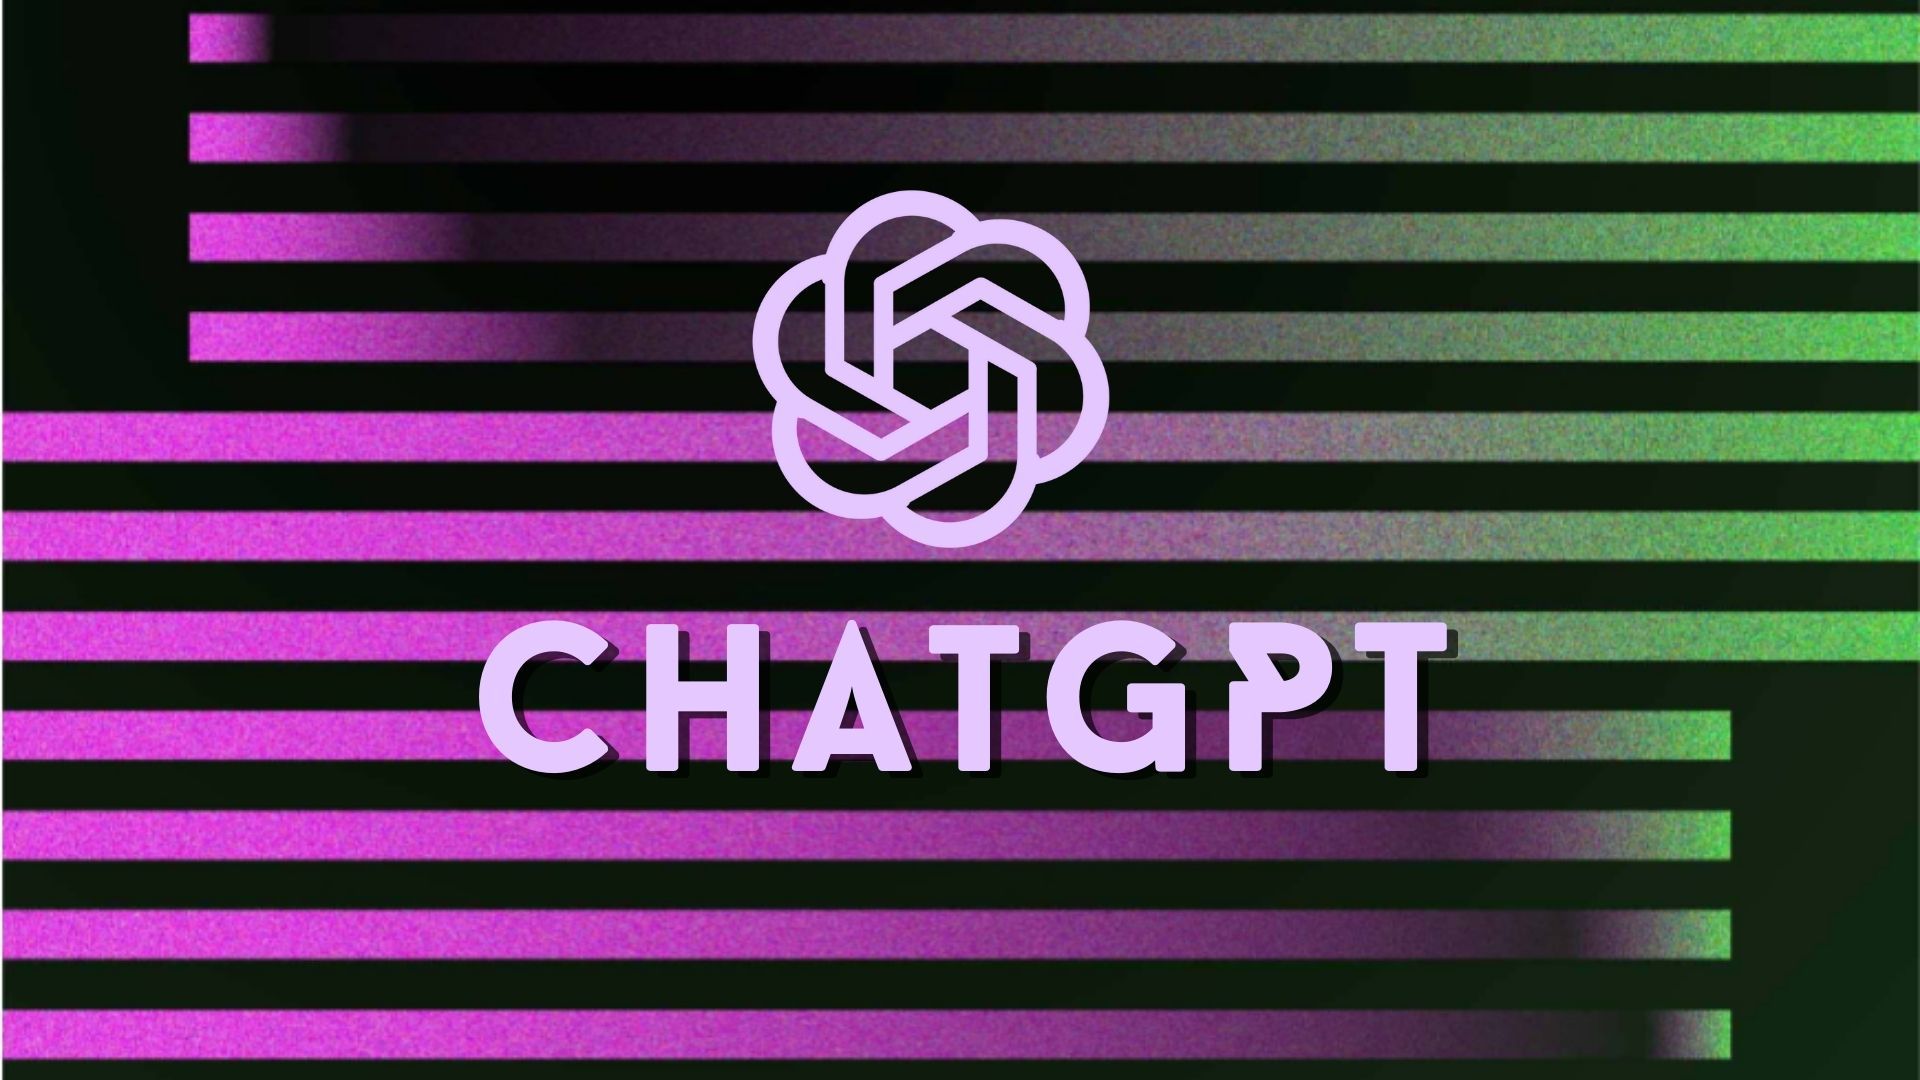 A liberdade de inovação em xeque: os verdadeiros interesses por trás dos  ataques ao ChatGPT